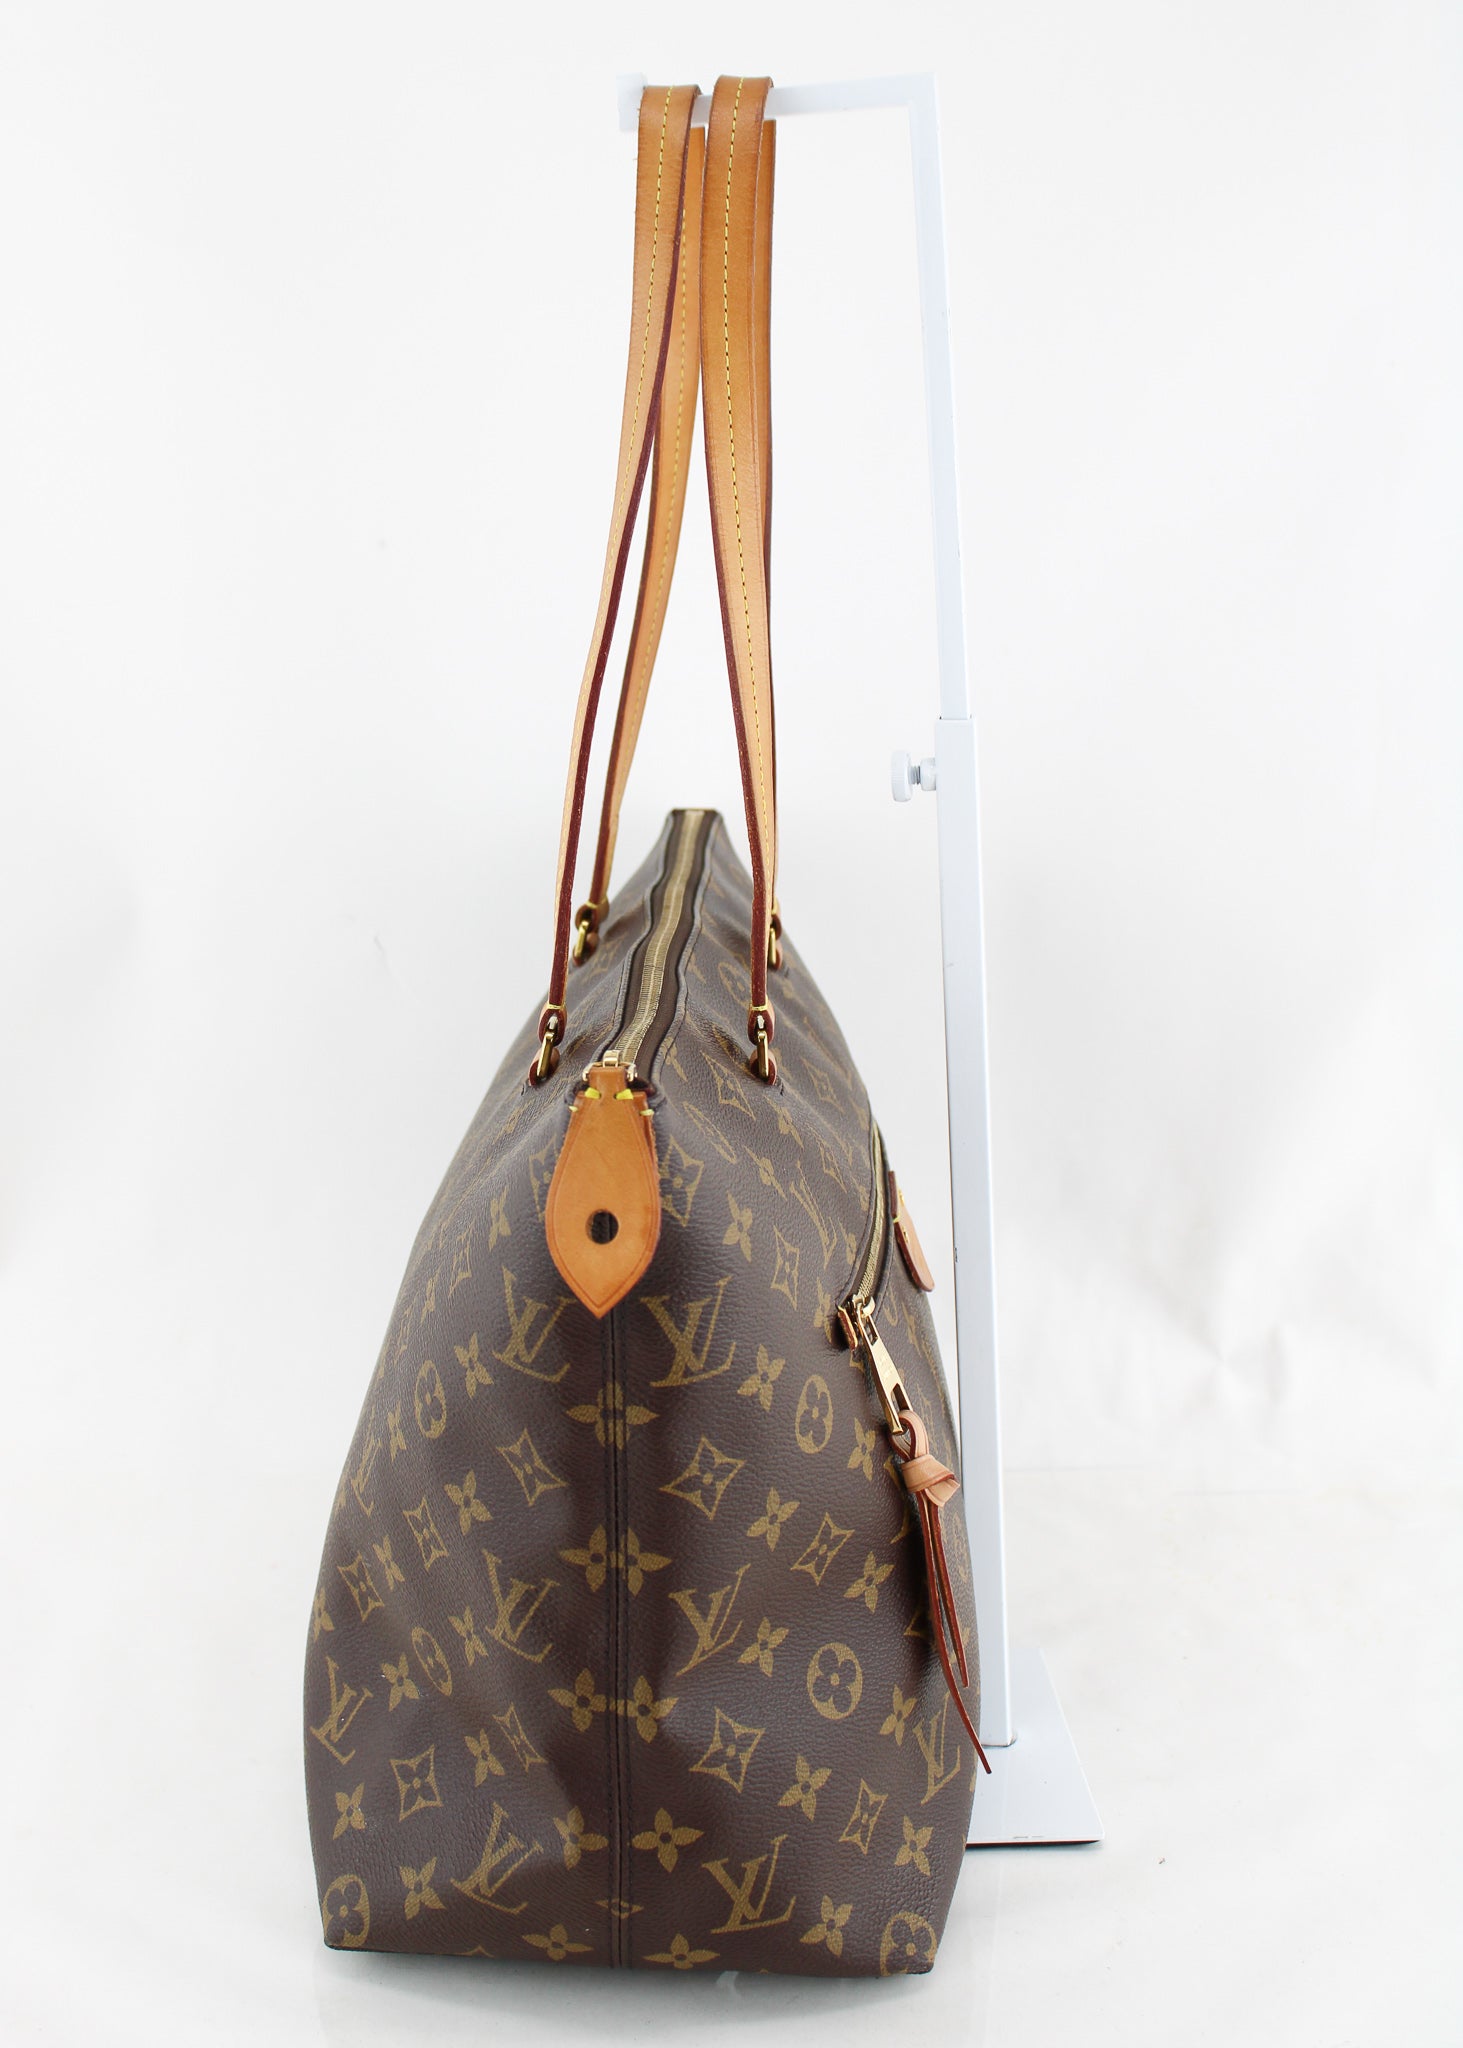 Louis Vuitton Iena Mm Monogram Handbag